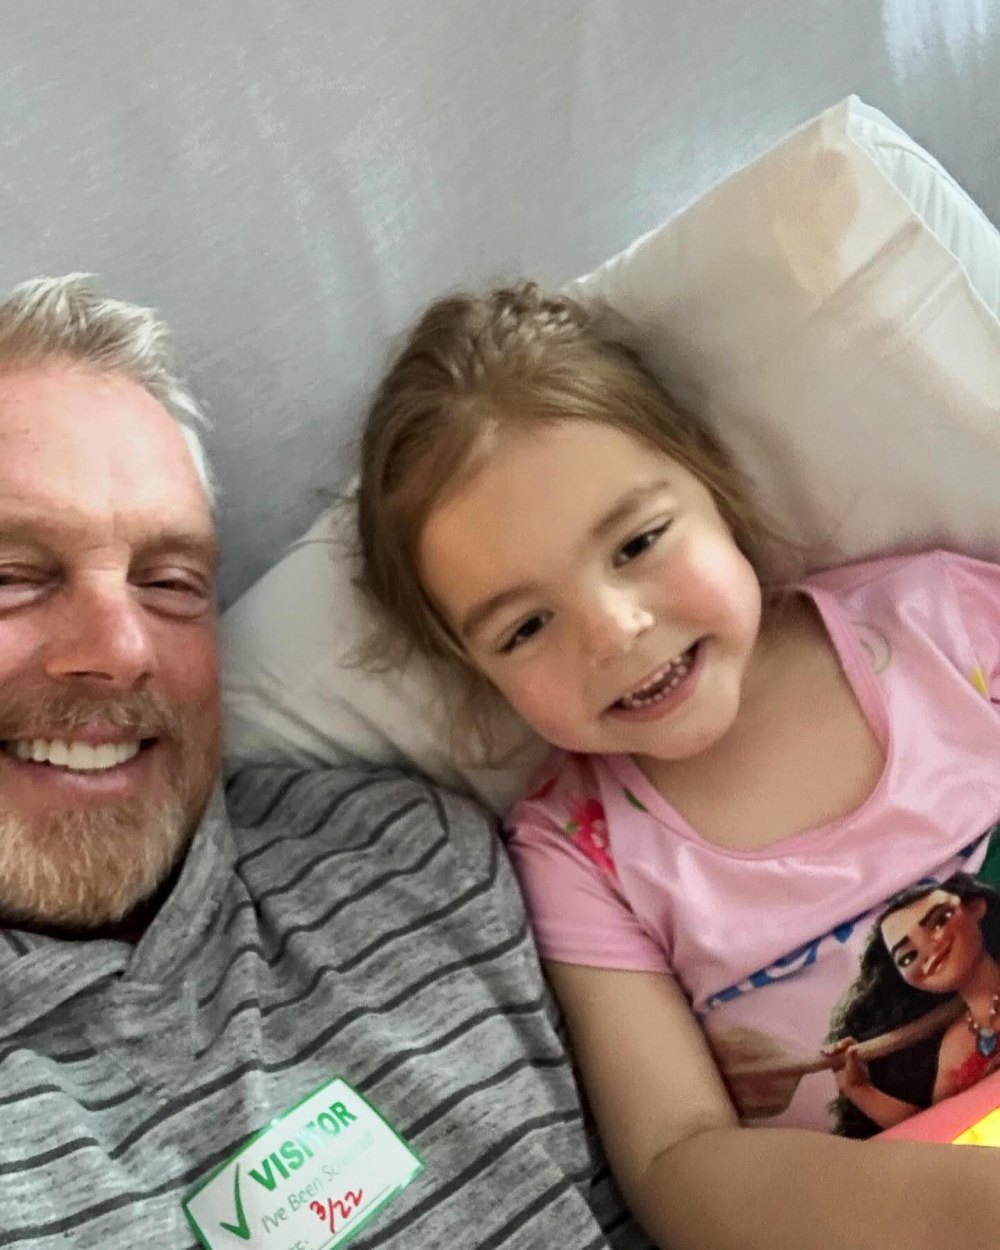 Promi-Trainer Gunnar Peterson teilt die Krebsdiagnose seiner 4-jährigen Tochter 572